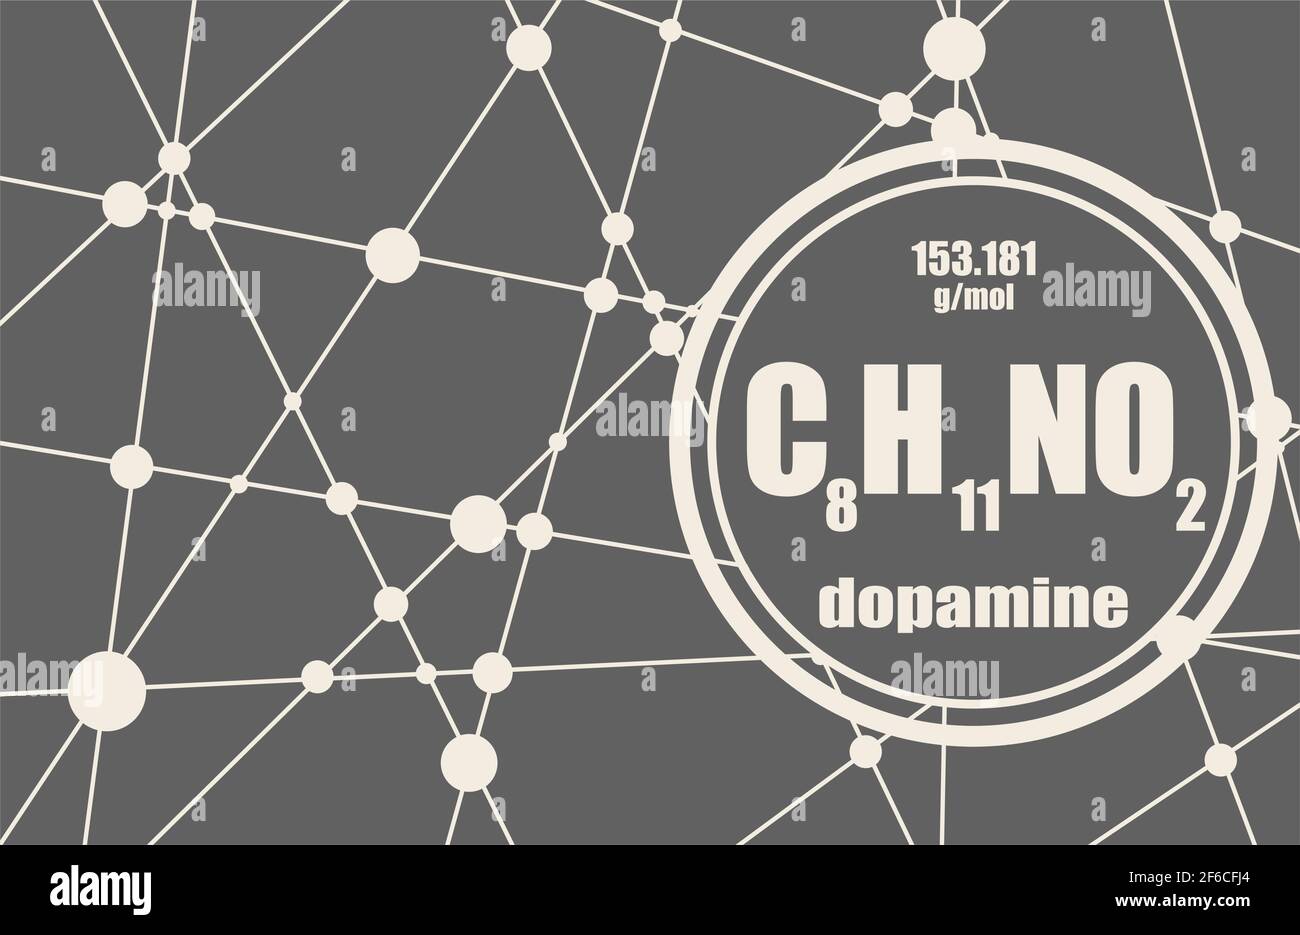 Chemische Formel von Hormon Dopamin. Infografiken-Illustration. Verbundene Linien mit Punkten Hintergrund Stock Vektor